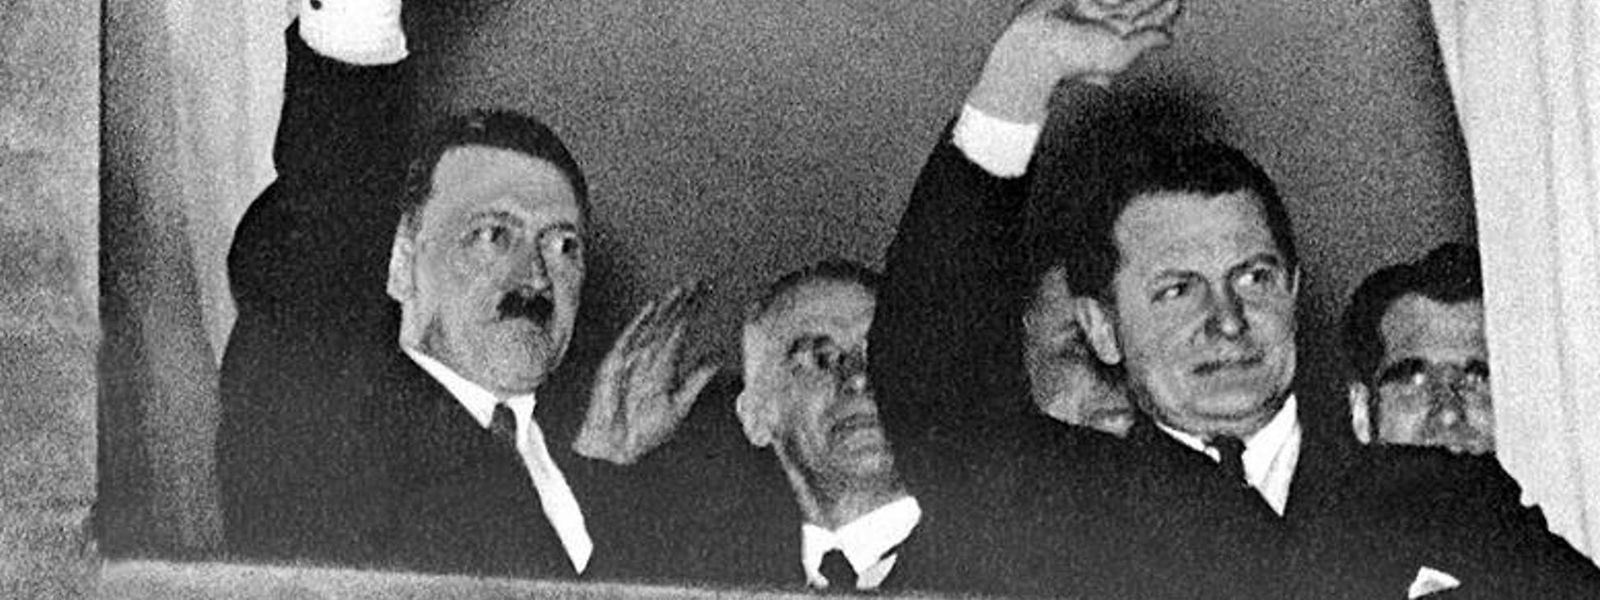 Für ihre Loyalität gegenüber Adolf Hitler erhalten noch heute 2033 außerhalb Deutschlands lebende Menschen Zahlungen.